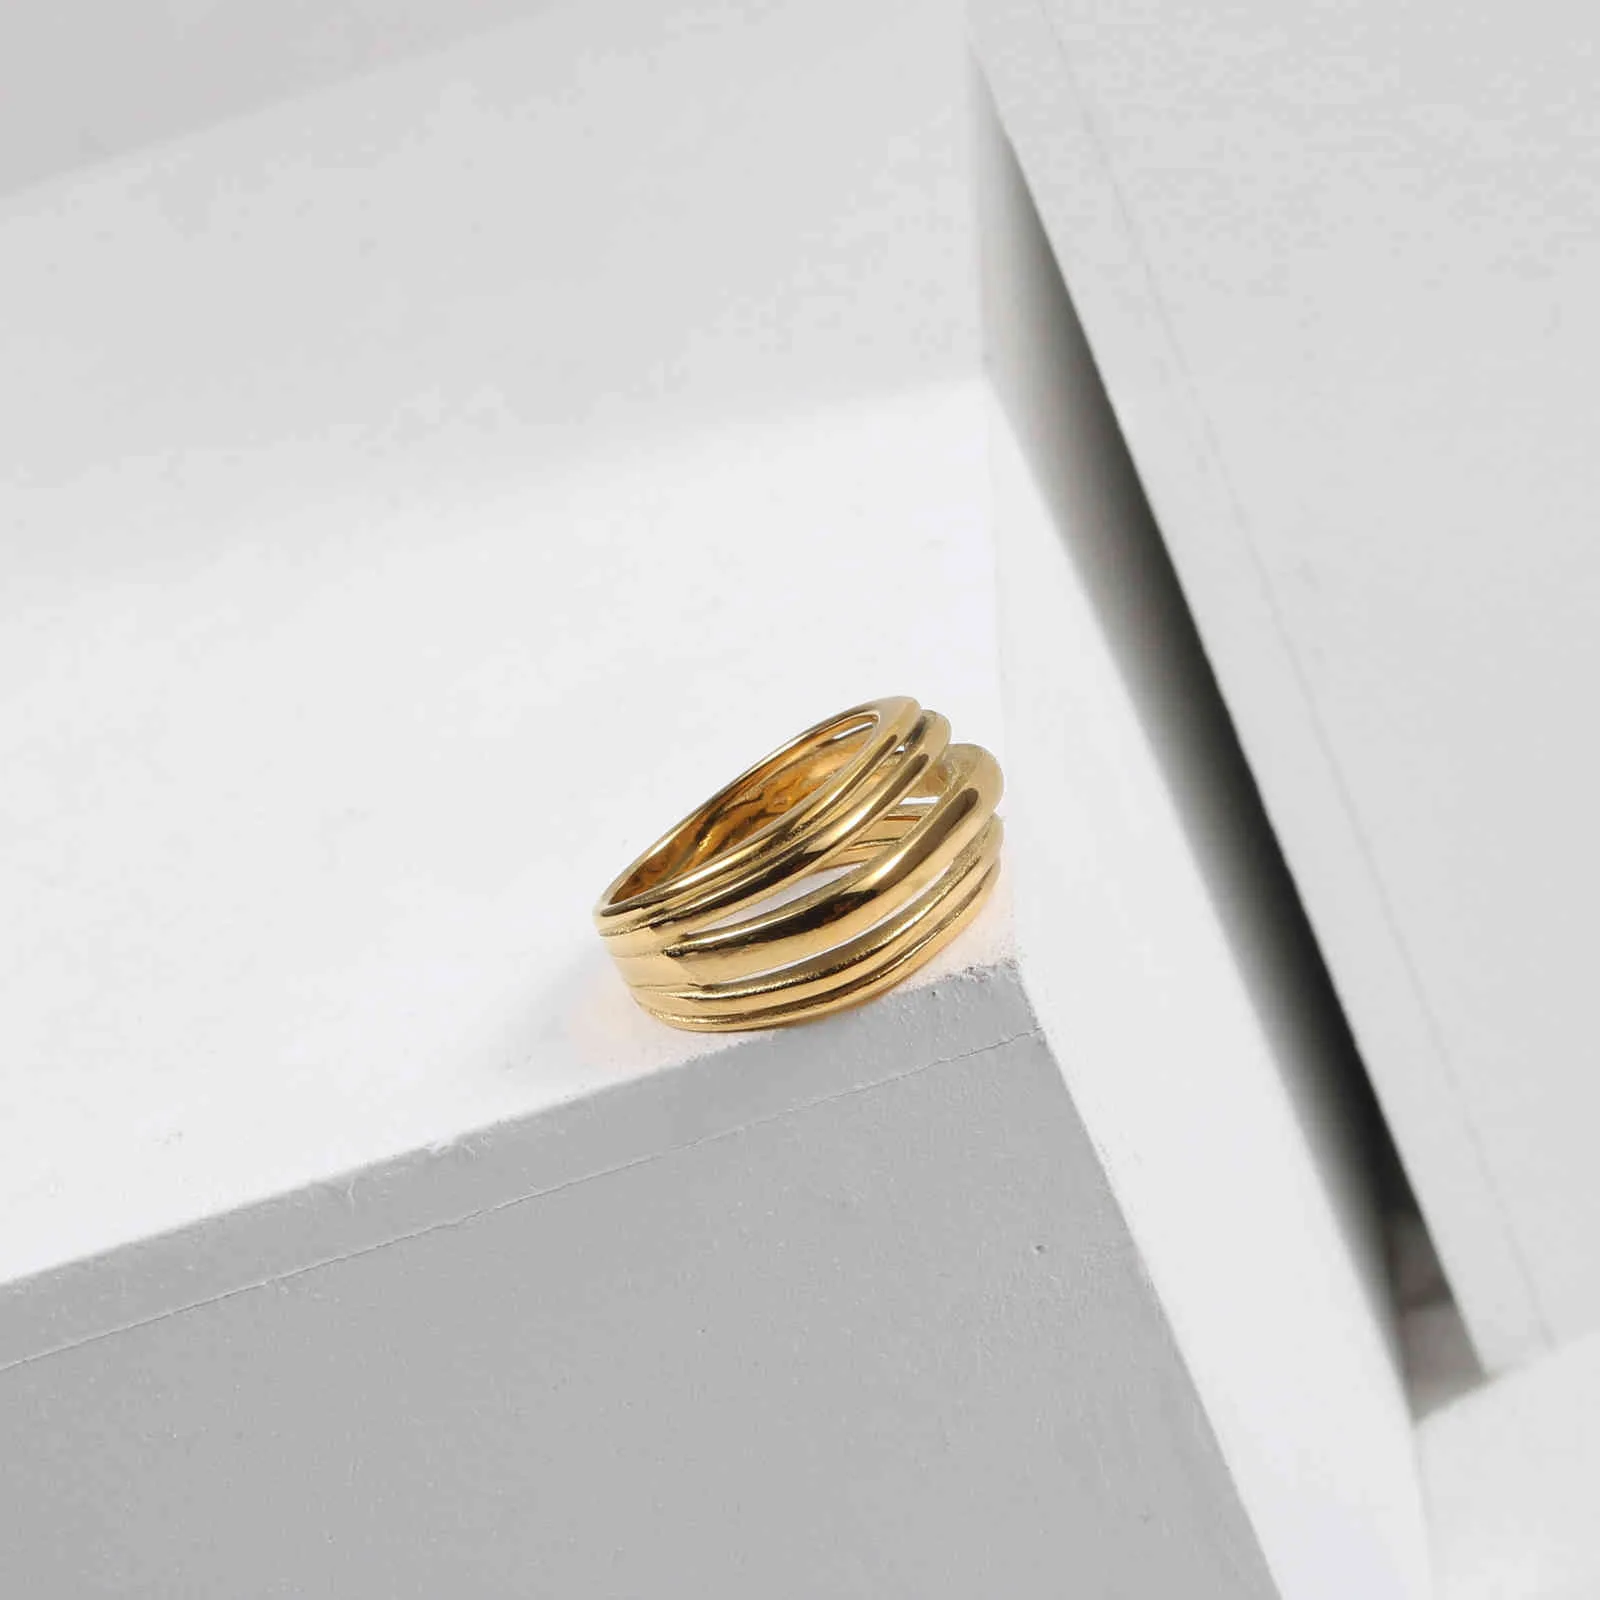 Edelstahl einzigartiger mehrschichtiger Ring minimalistisches Geschenk für Frauen Gold Design Kreuz Punk 2021 Trends Accessoires Schmuck